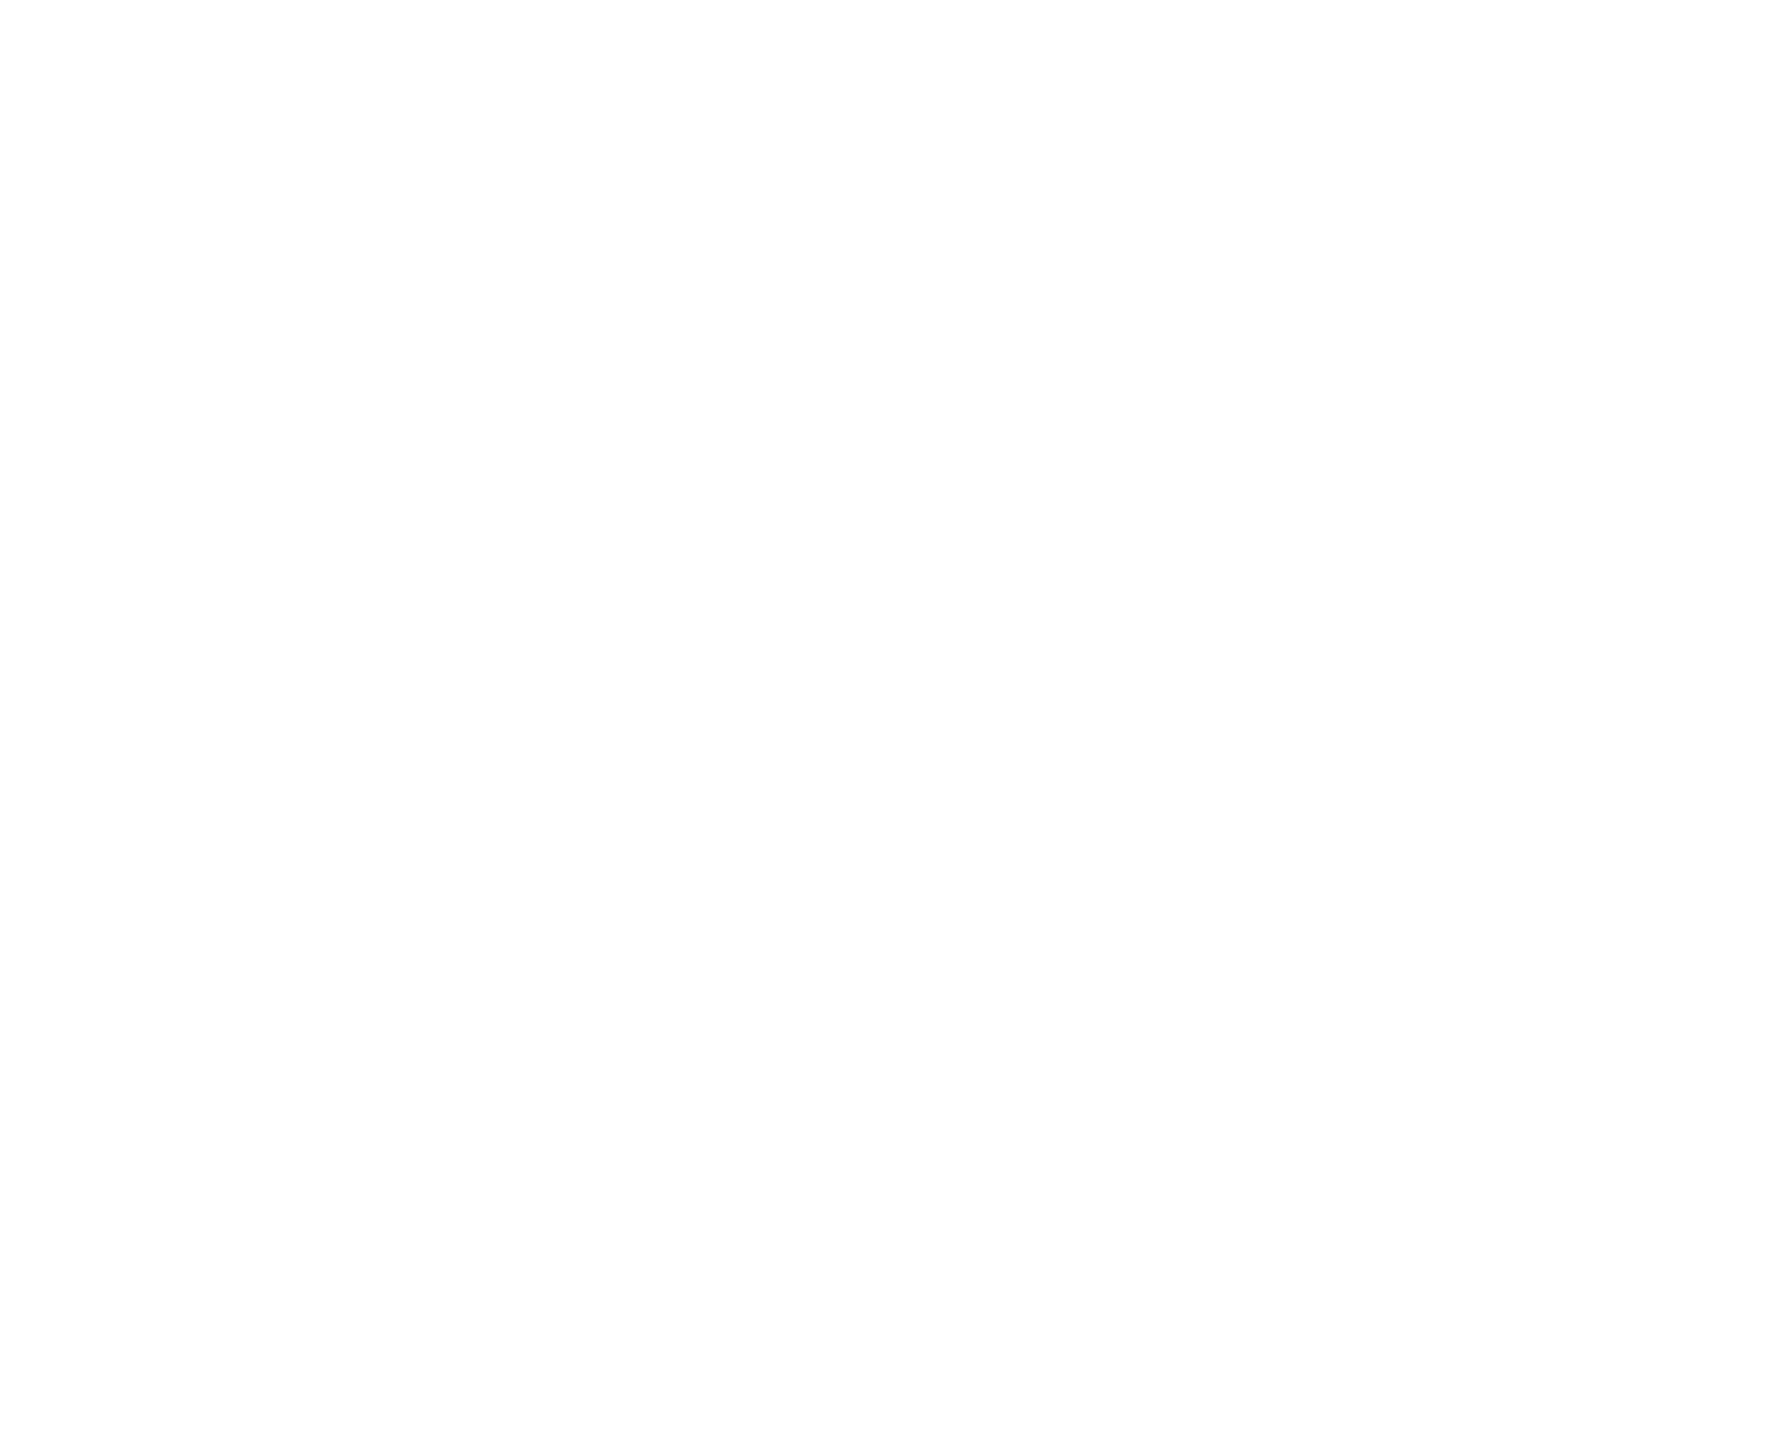 ECCR Papagallo